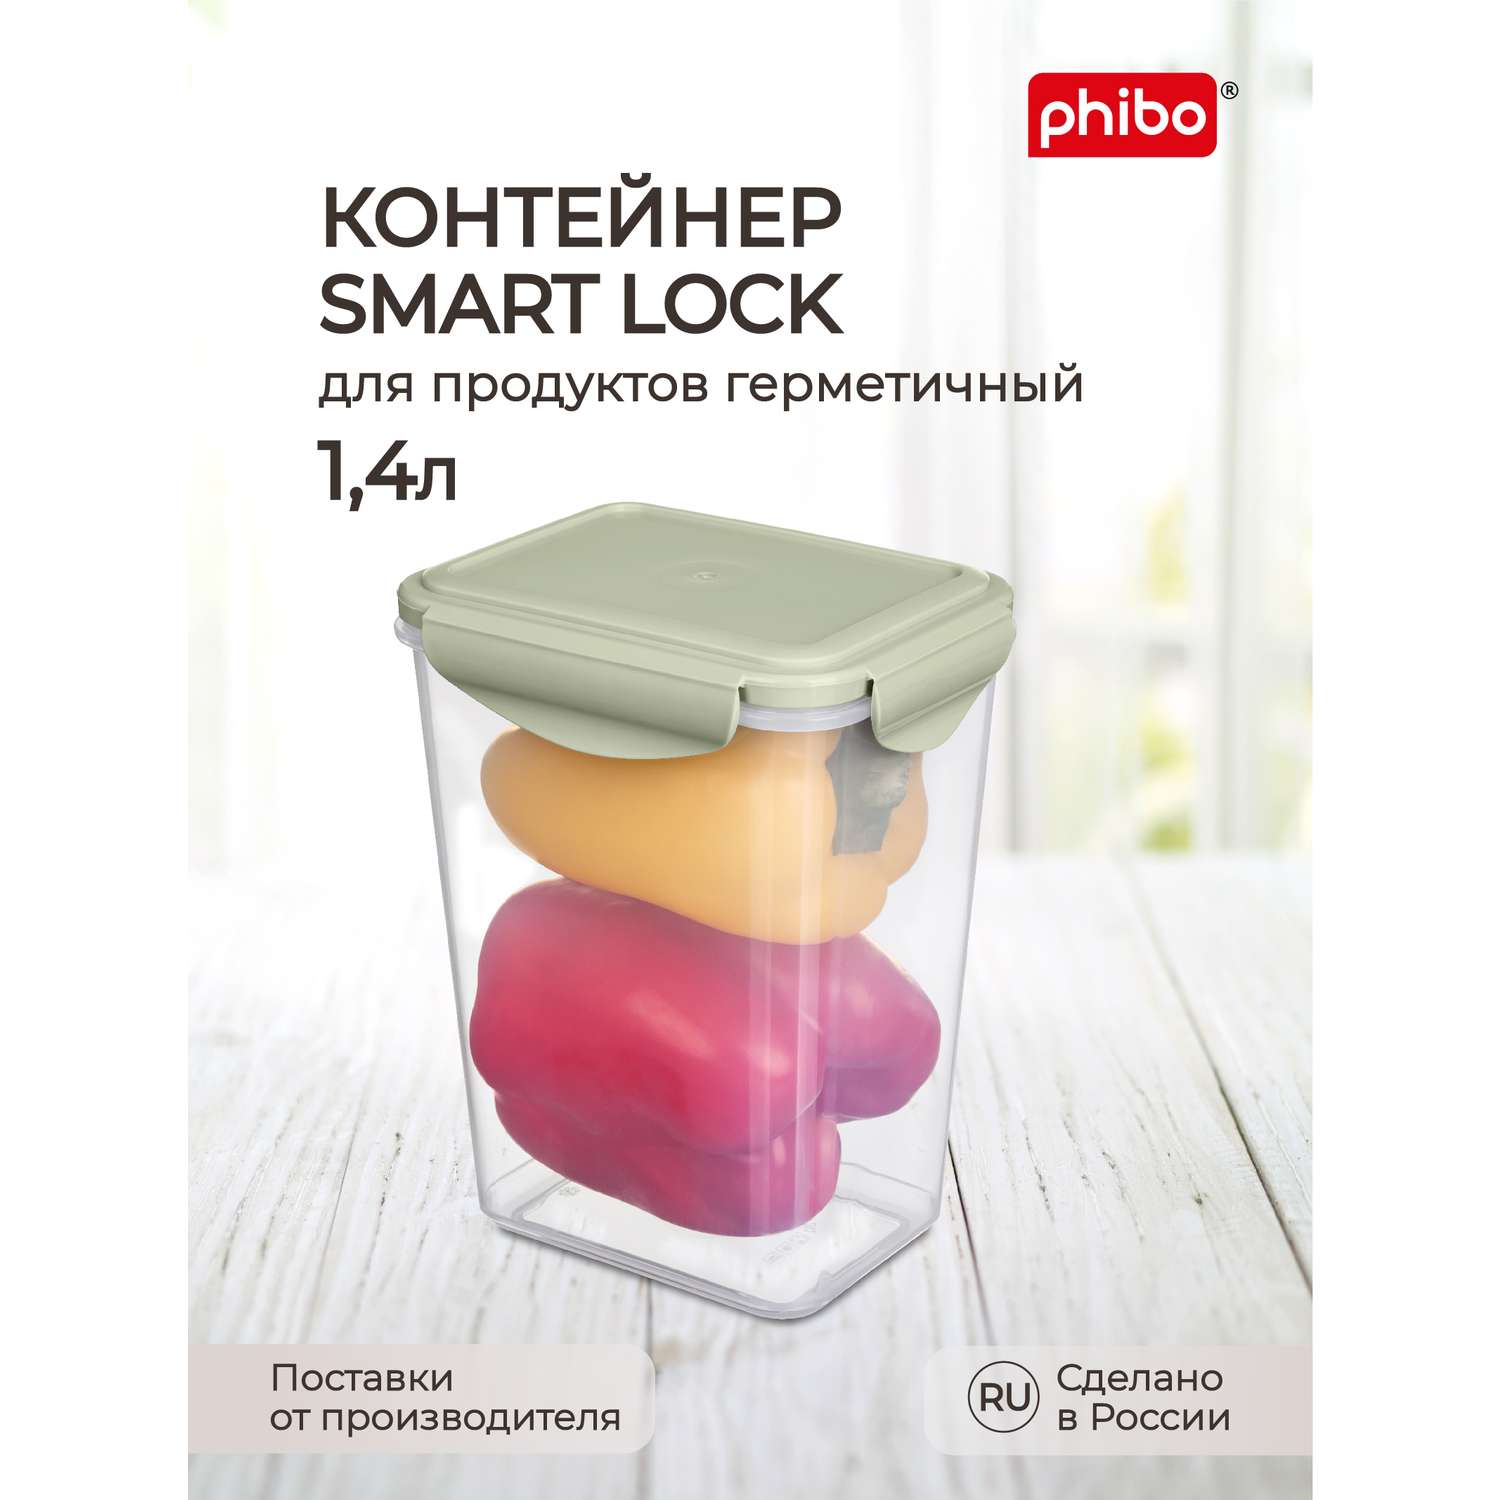 Контейнер Phibo для продуктов герметичный Smart Lock прямоугольный 1.4л зеленый - фото 1